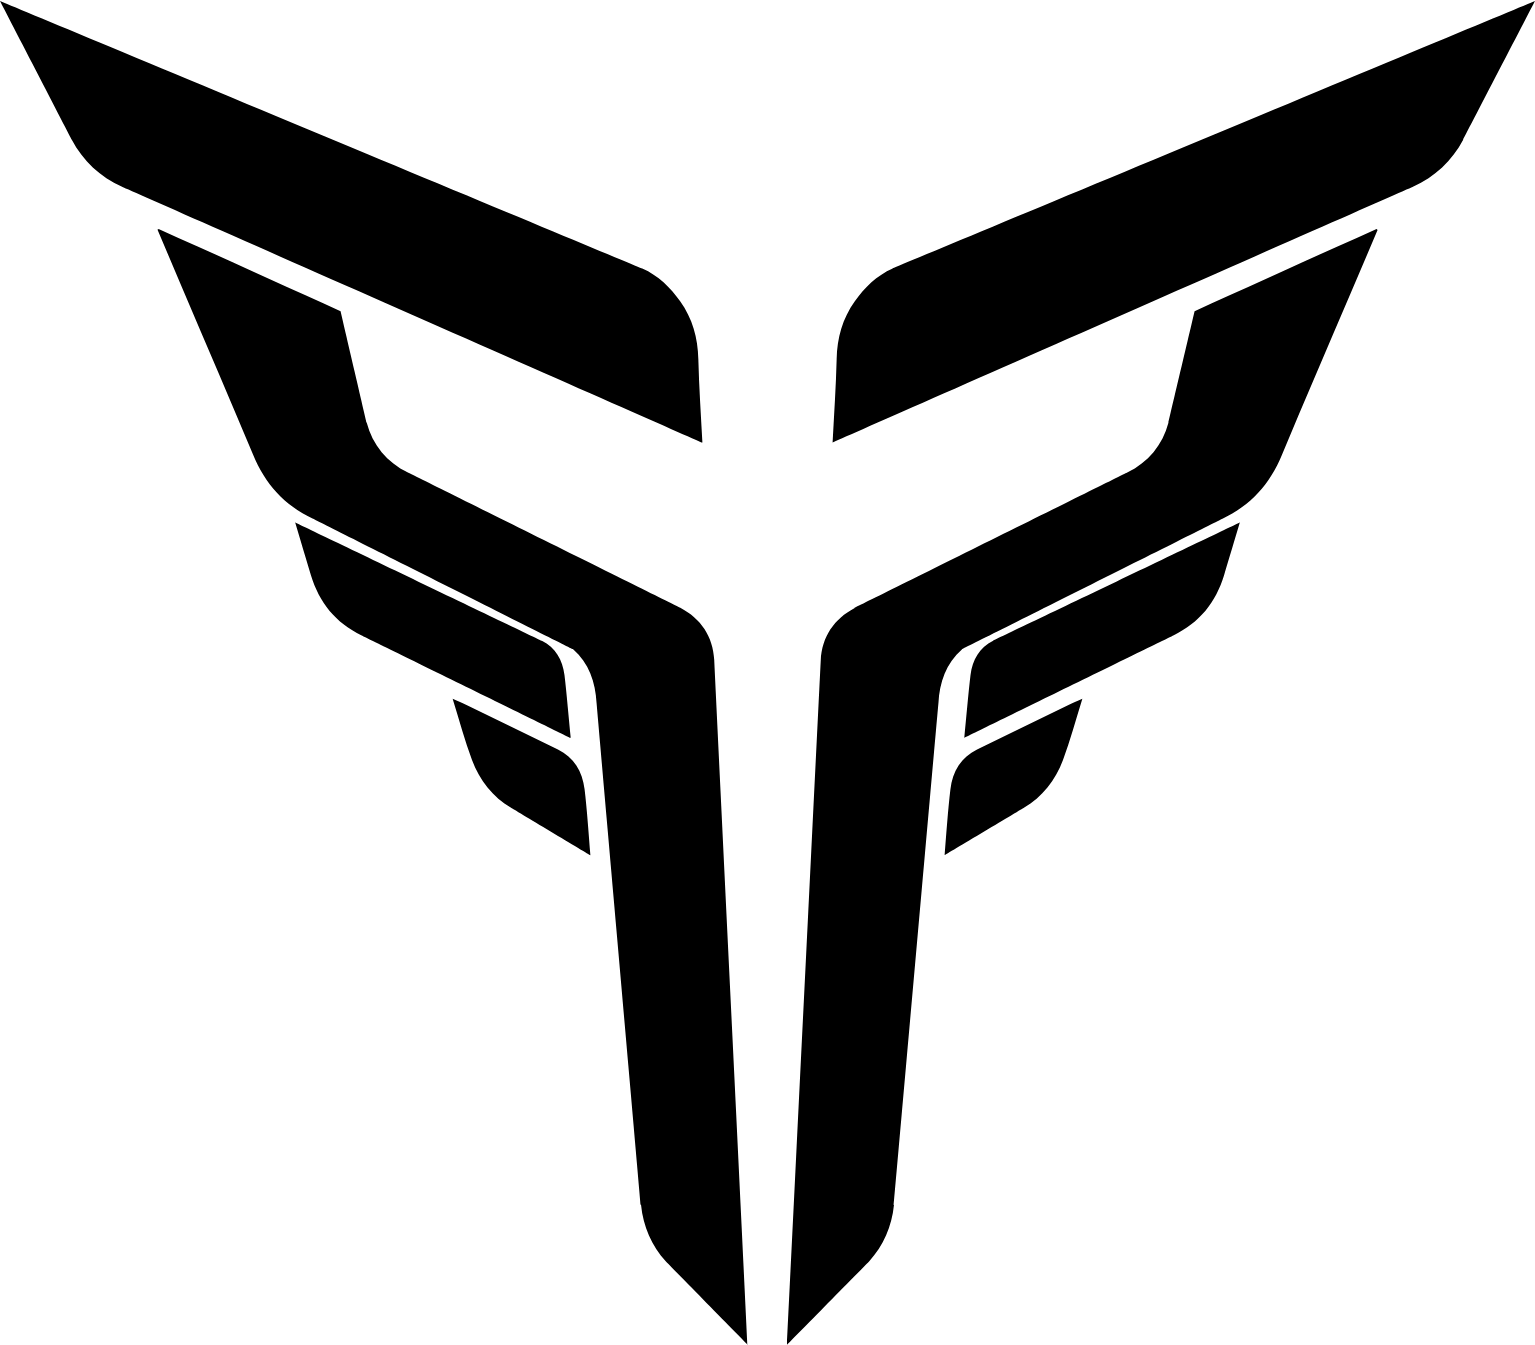 XOS logo (transparent PNG)